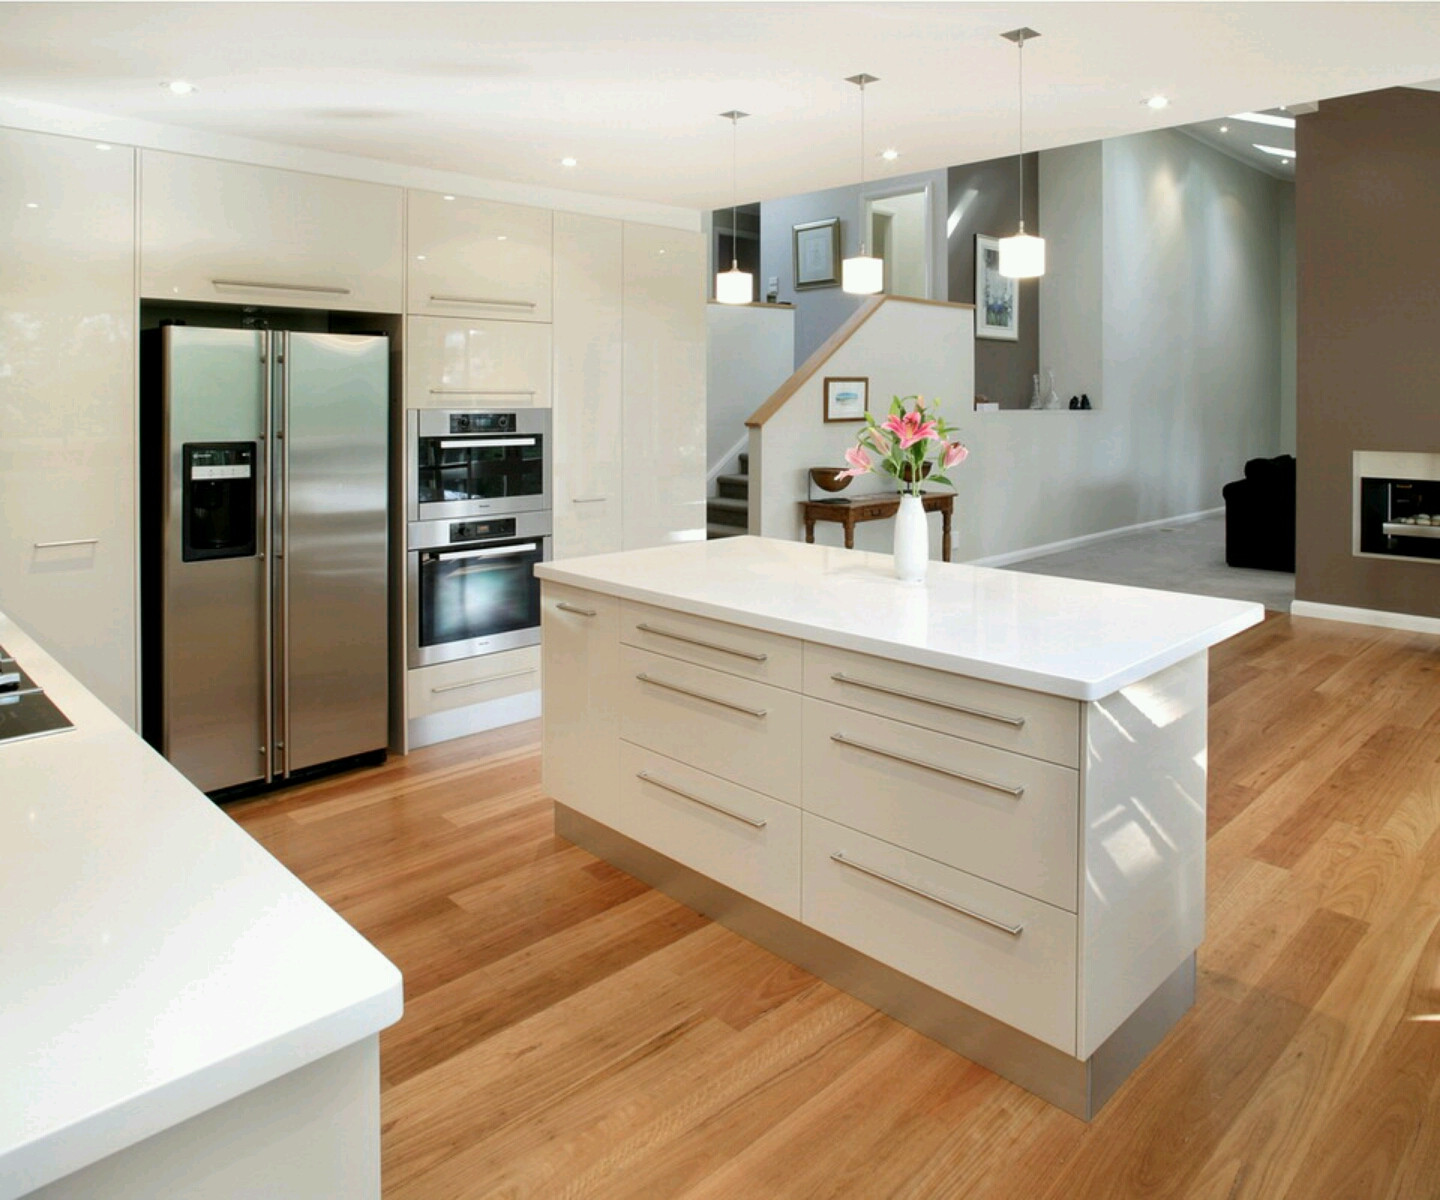 Kitchen Design Gallery
 Luxury kitchen modern kitchen cabinets designs